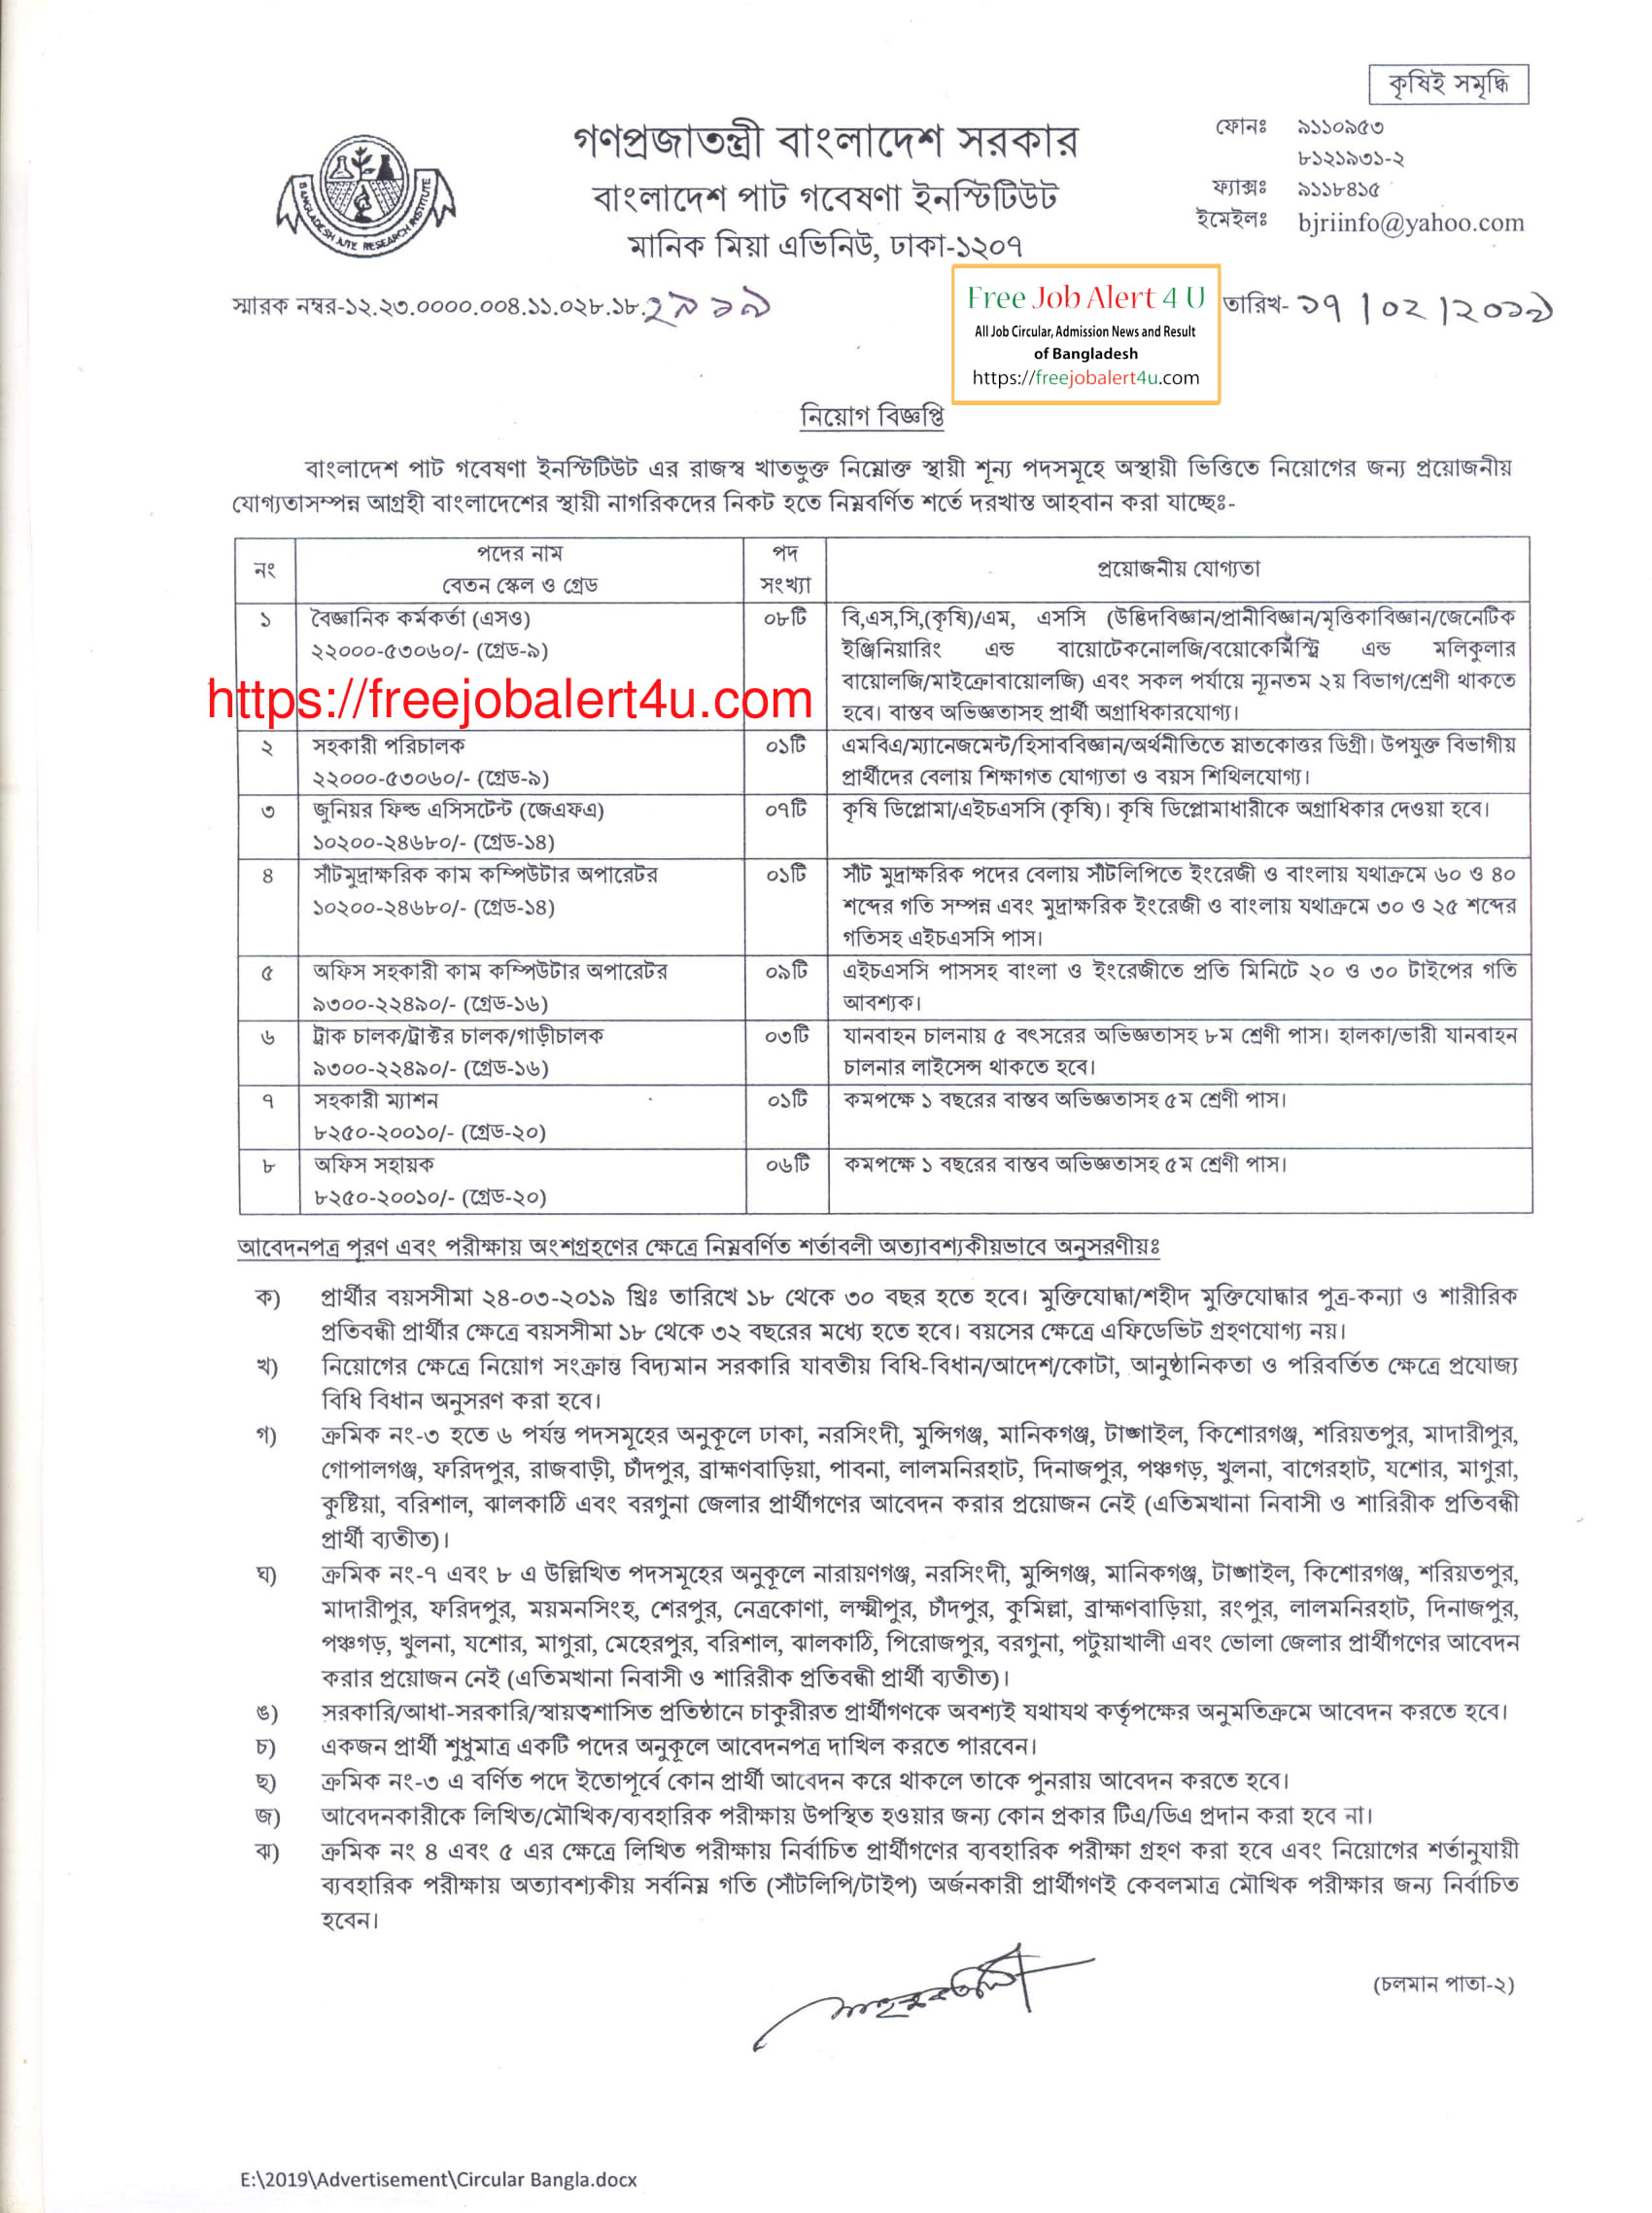 বাংলাদেশ পাট গবেষণা ইনস্টিটিউট নিয়োগ বিজ্ঞপ্তি ২০১৯ (Bangladesh Jute Research Institute (BJRI) job Circular 2019)